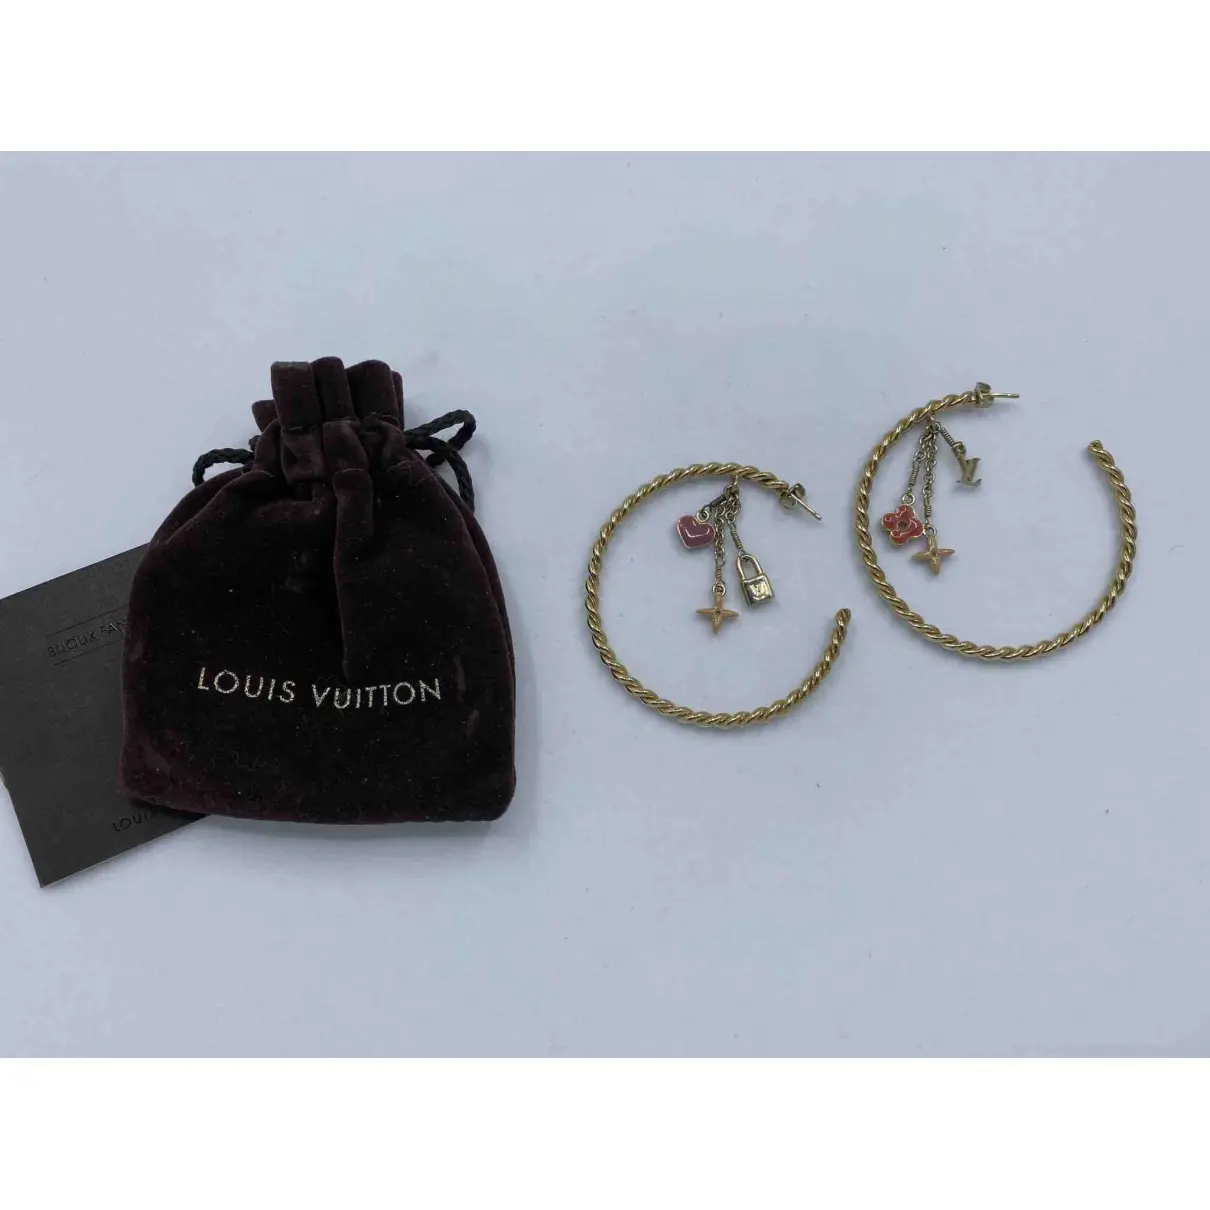 Buy Louis Vuitton Monogram earrings online